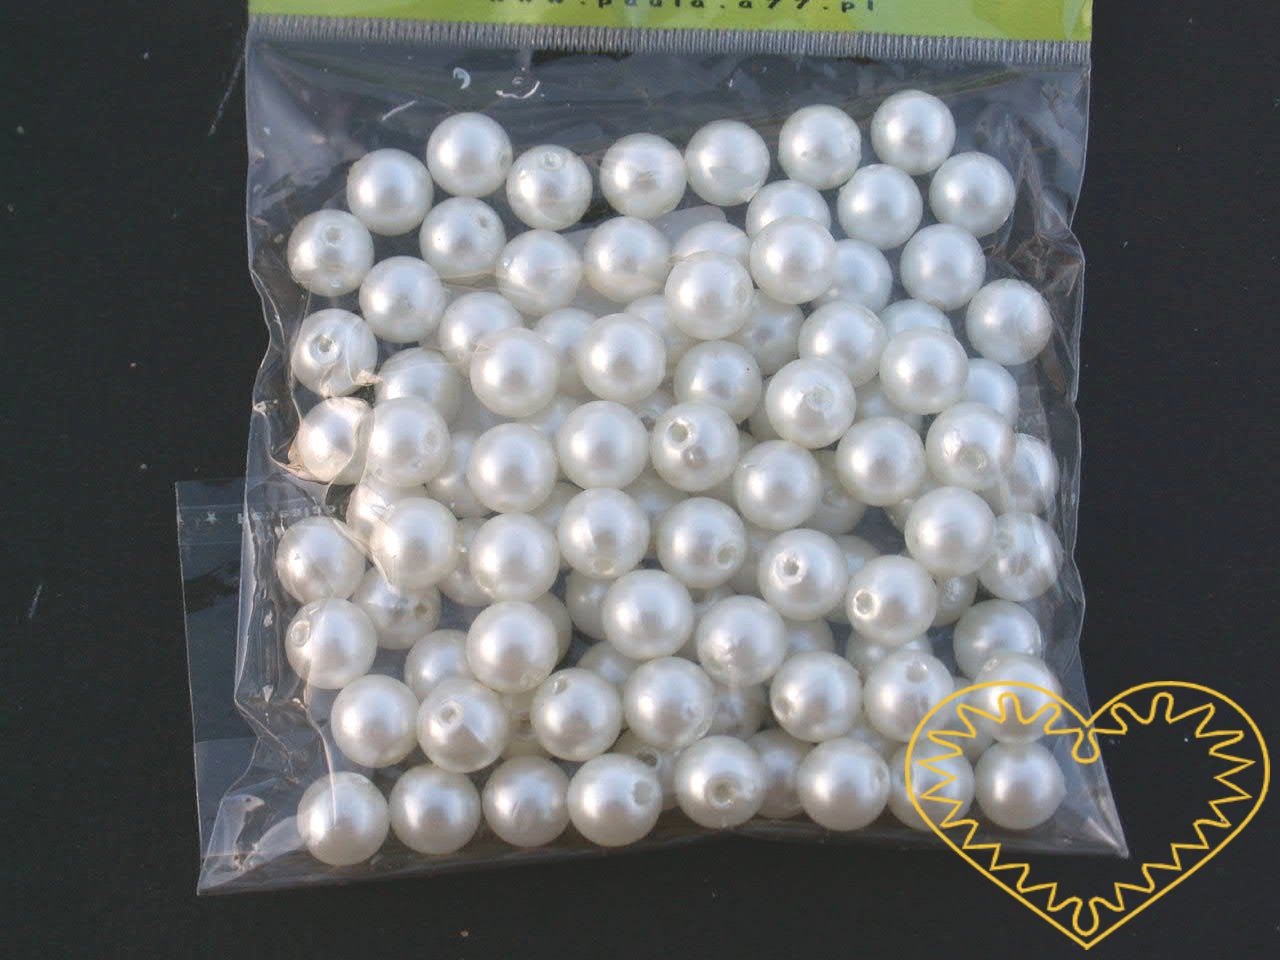 Bílé plastové perličky velikosti 10 mm - jedno balení má hmotnost 50 g. Korálky jsou vhodné pro tvoření s dětmi, pro výrobu bižuterie i dalších ozdob. Bílé perličky se také hodí k svatebním dekoracím a do svatebních kytic.